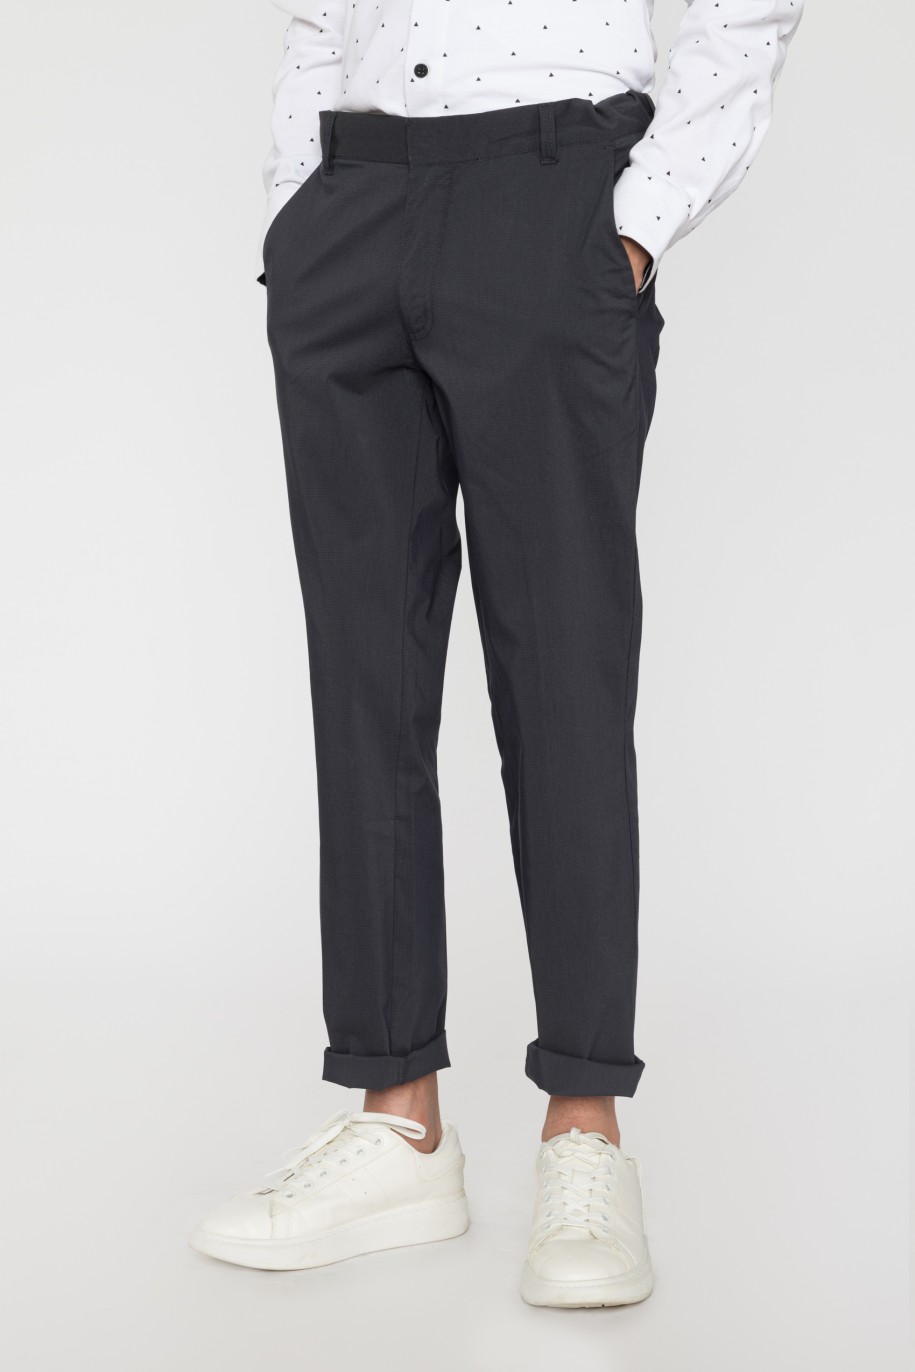 Granatowe spodnie garniturowe dla chłopaka - 33744